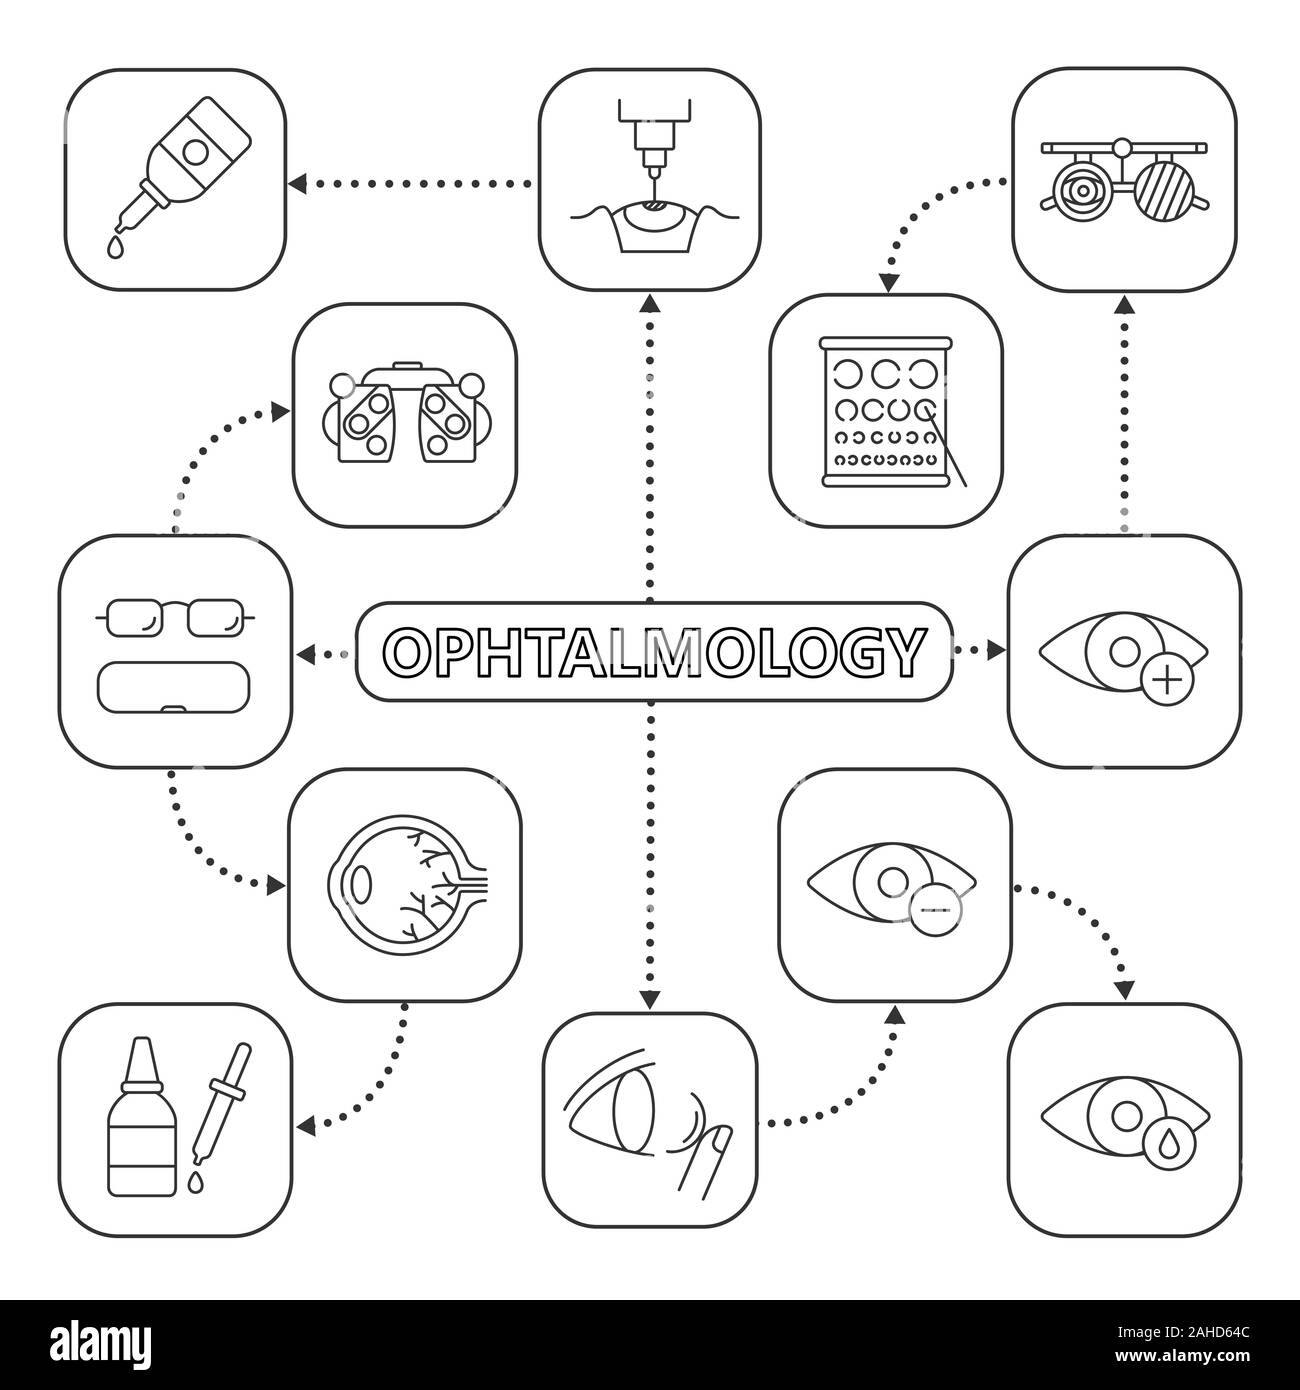 Oftalmología mapa mental lineal con iconos. Concepto de optometría plan. La  miopía, hipermetropía, Anatomía del ojo, cae y gotero, anteojos, lentes,  examen phoro Imagen Vector de stock - Alamy